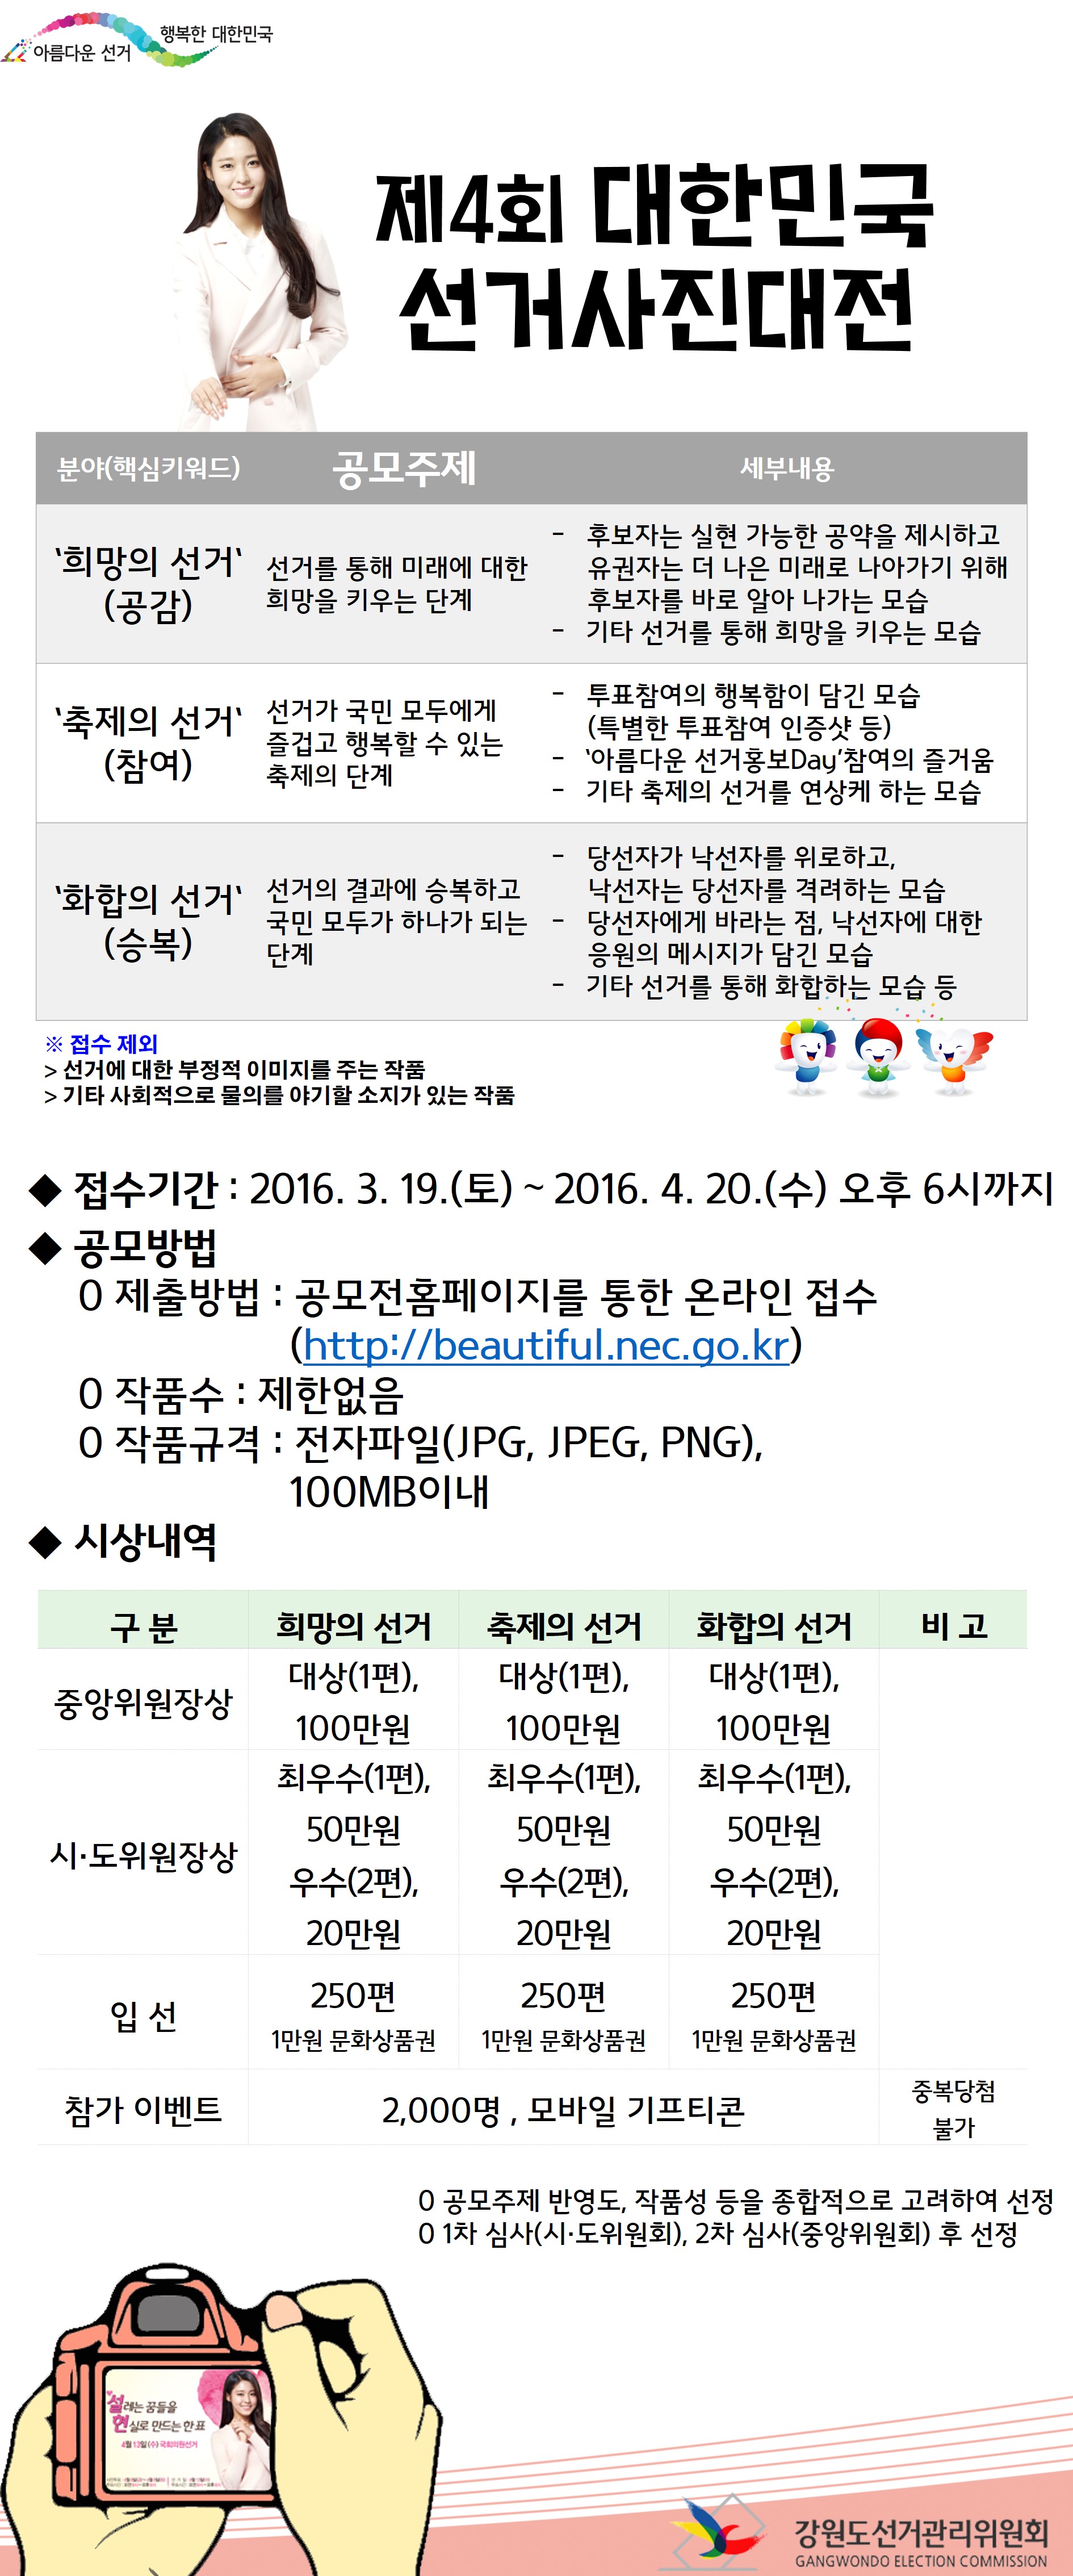 제4회 대한민국 선거사진대전 안내포스터